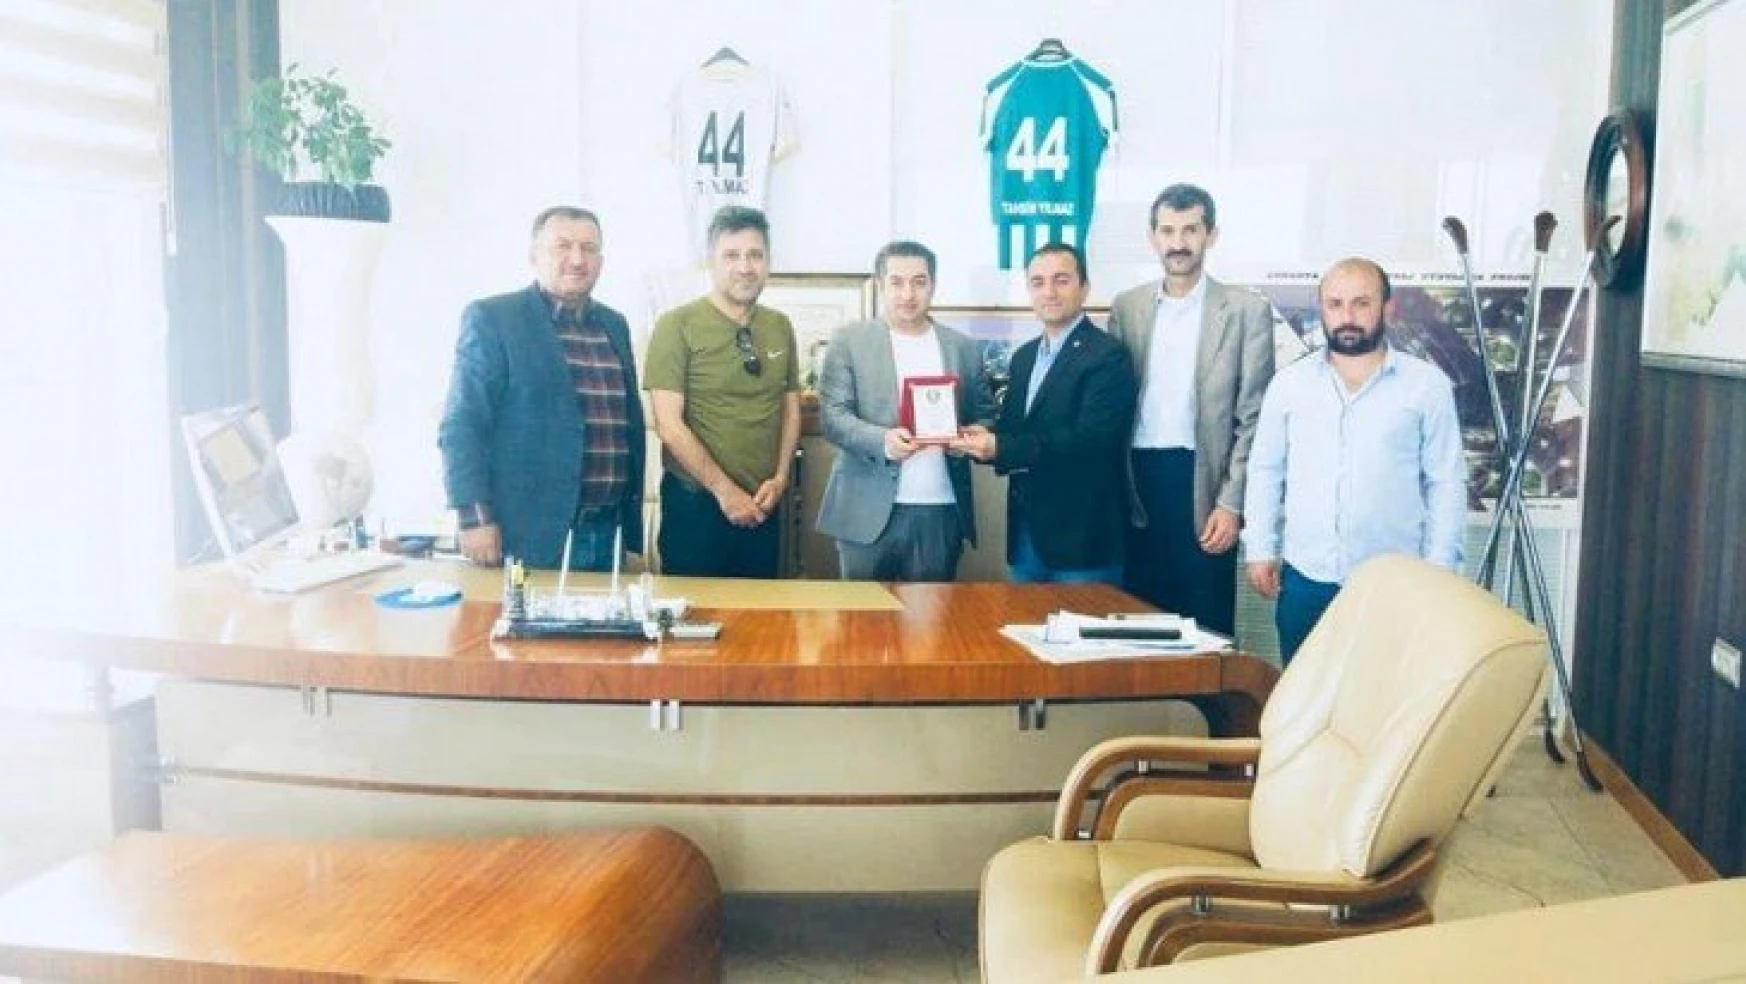 Hekimhan Belediyesi Girmanaspor  Yılmaz'a plaket verdi